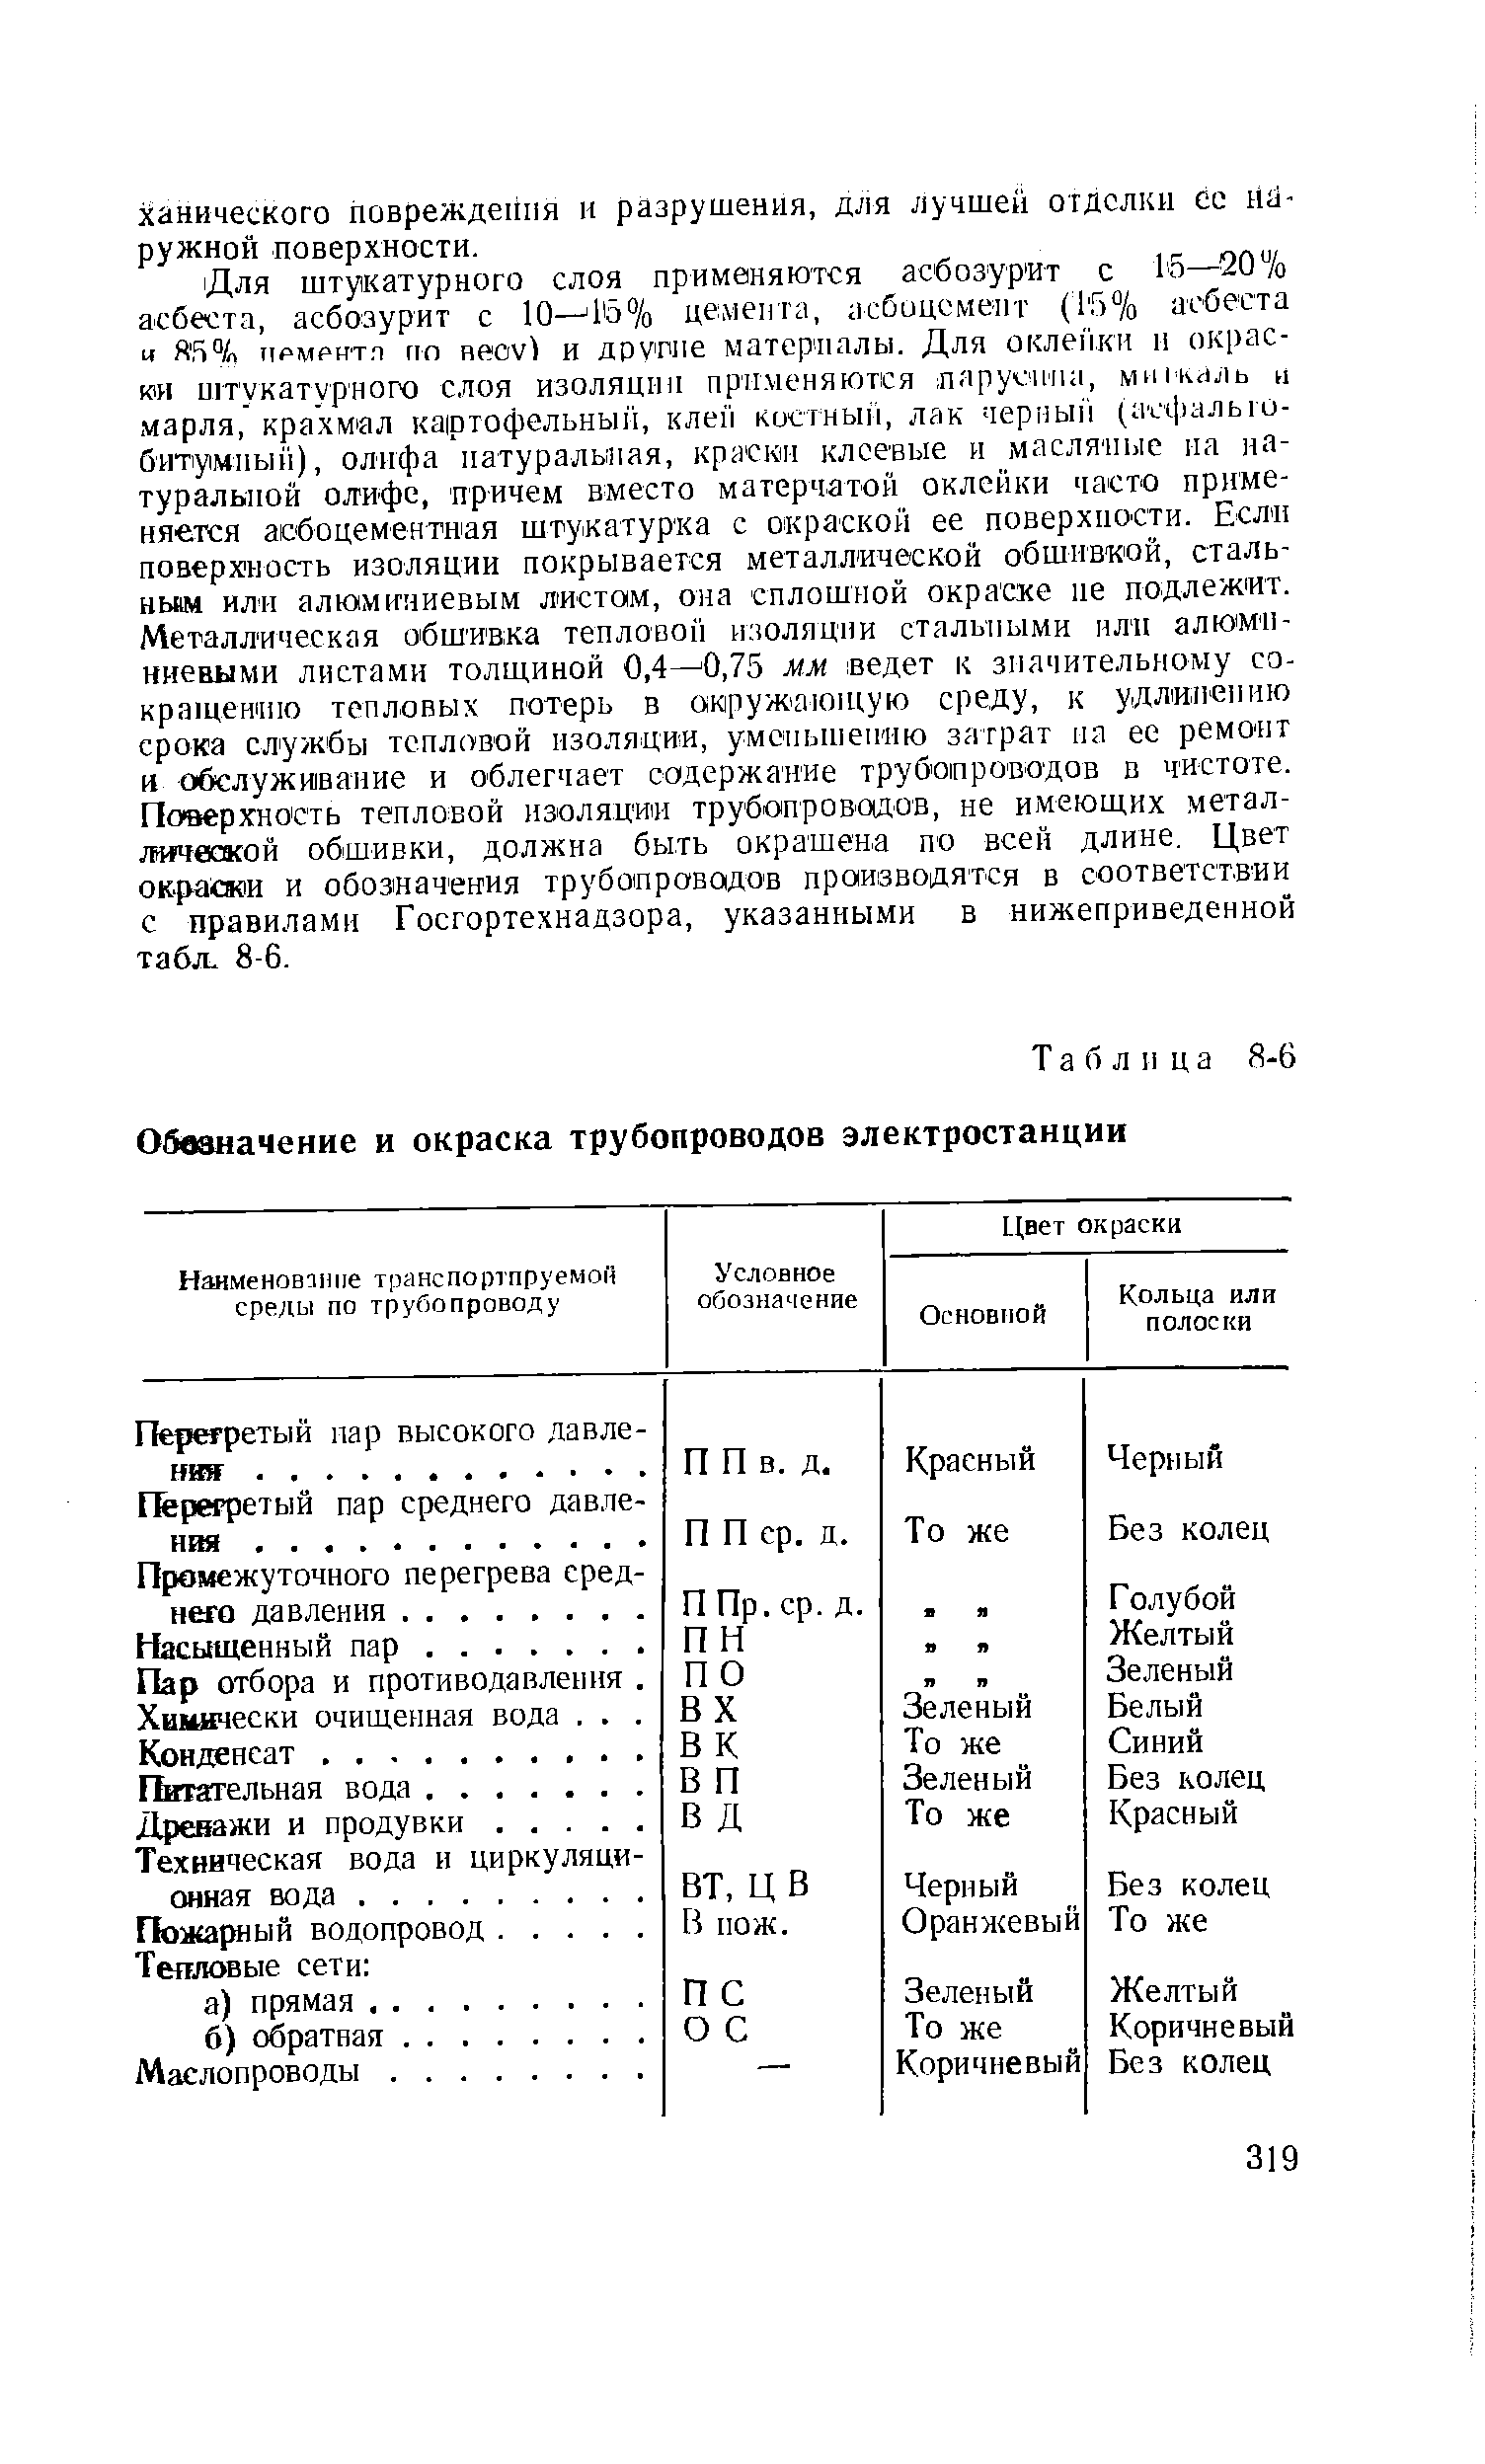 Таблица 8-6 Обозначение и окраска трубопроводов электростанции
